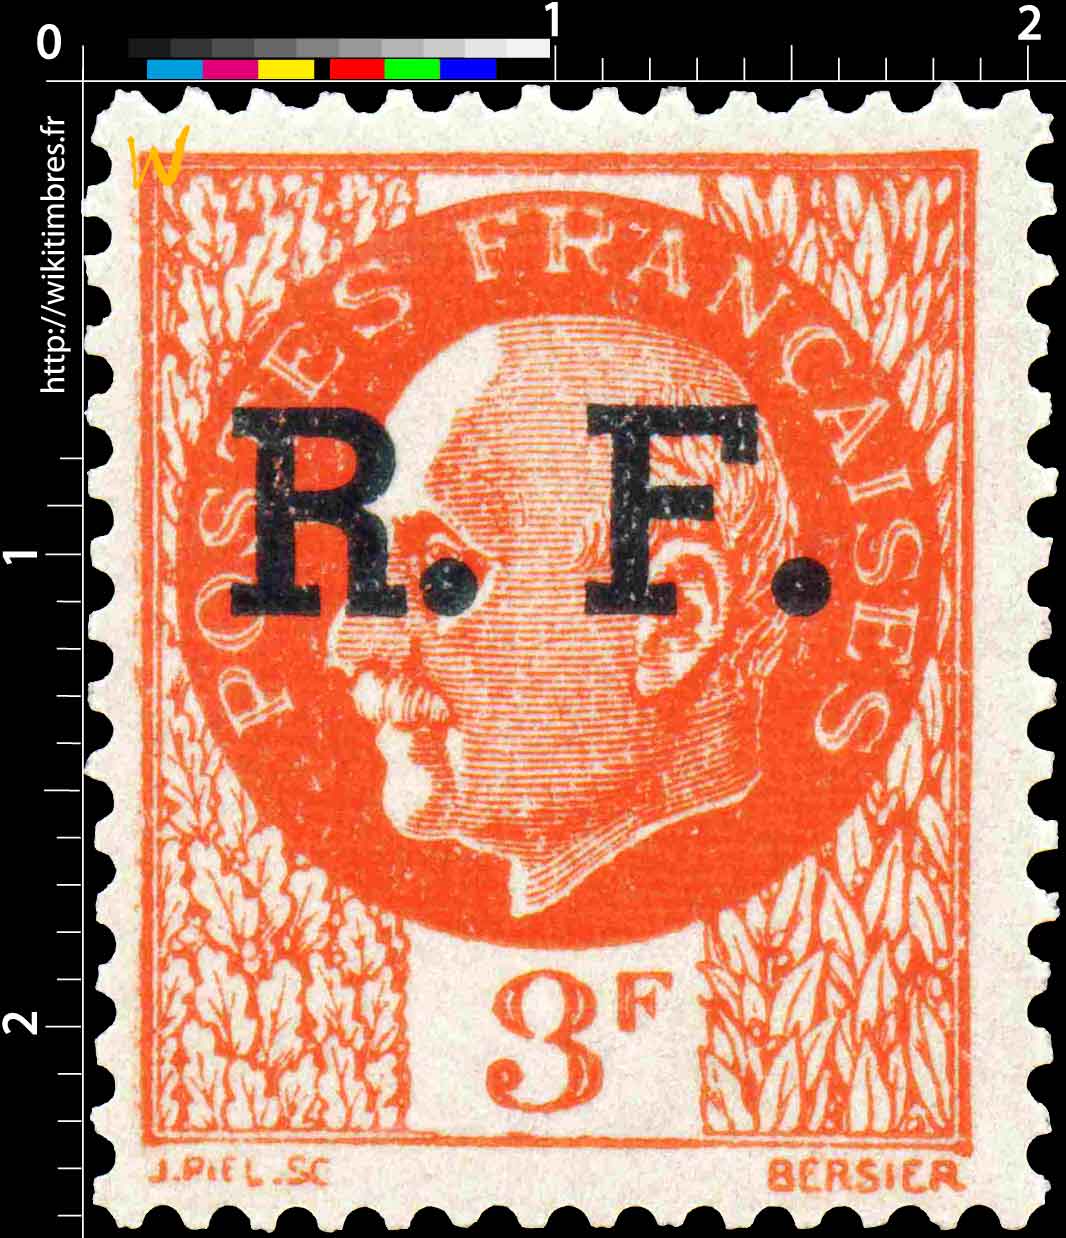 R.F. - type Bersier